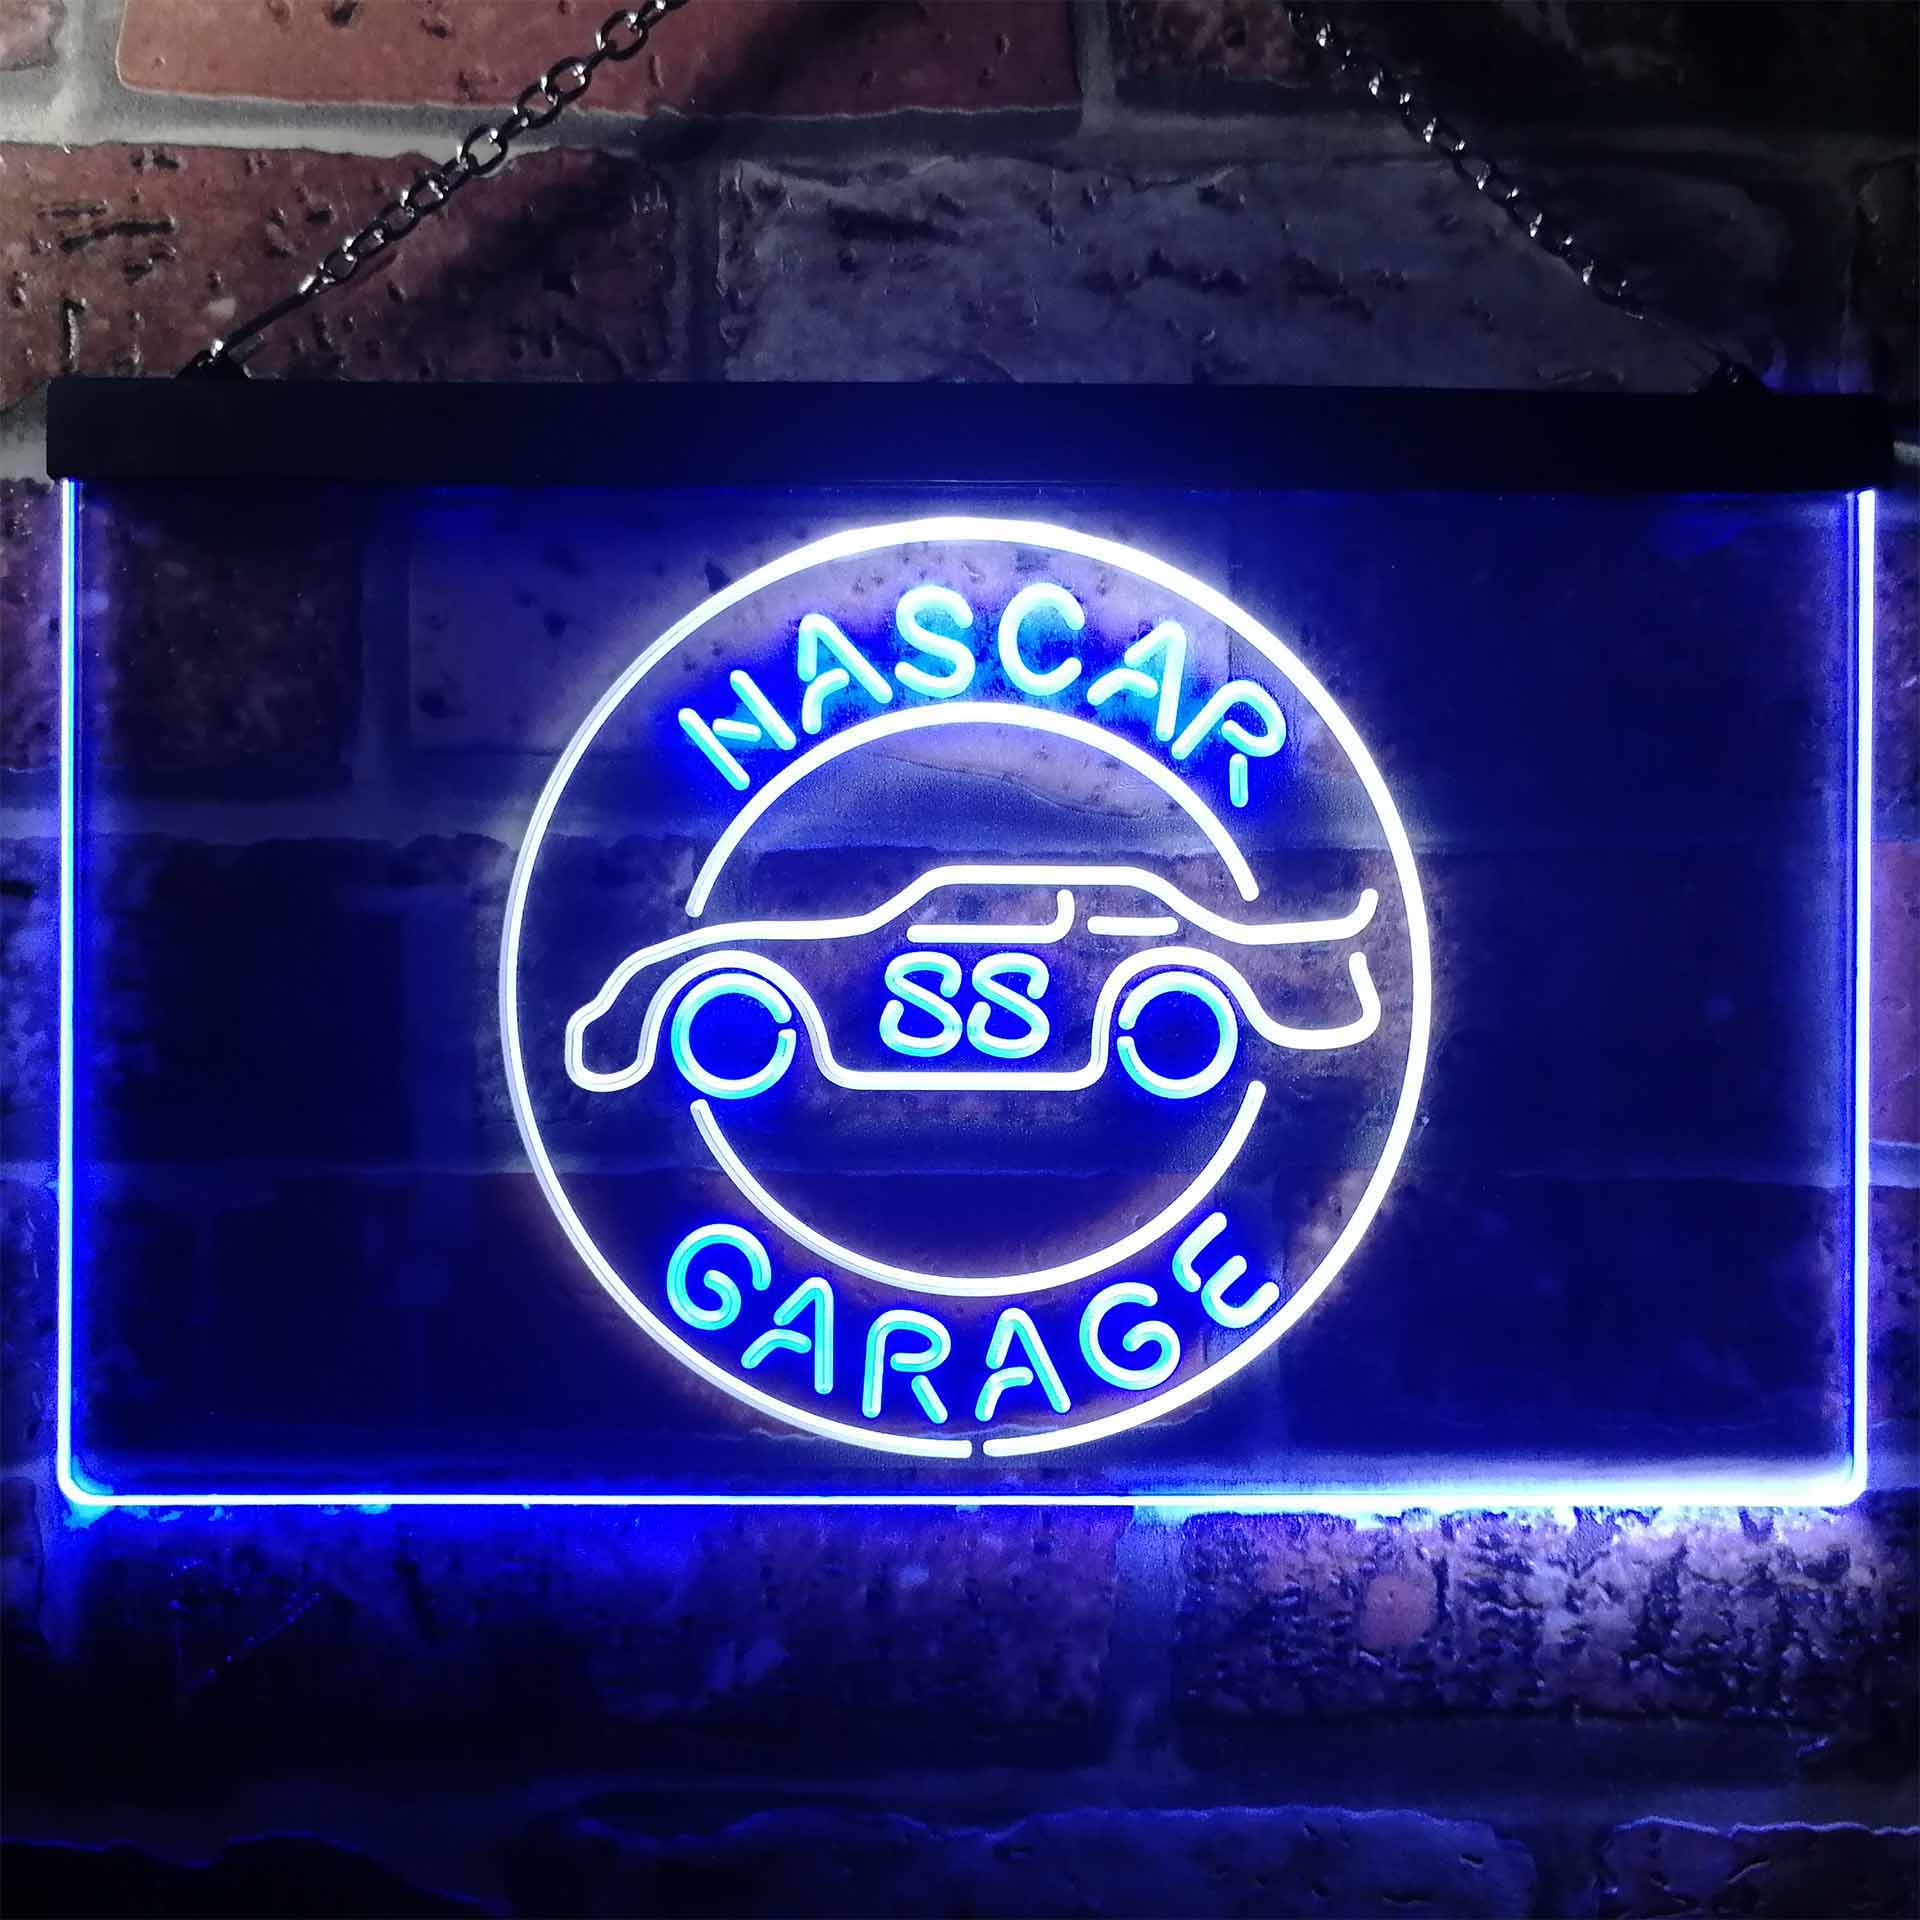 Nascar 88 Garage Dale Jr. League Club Man Cave Neon Sign